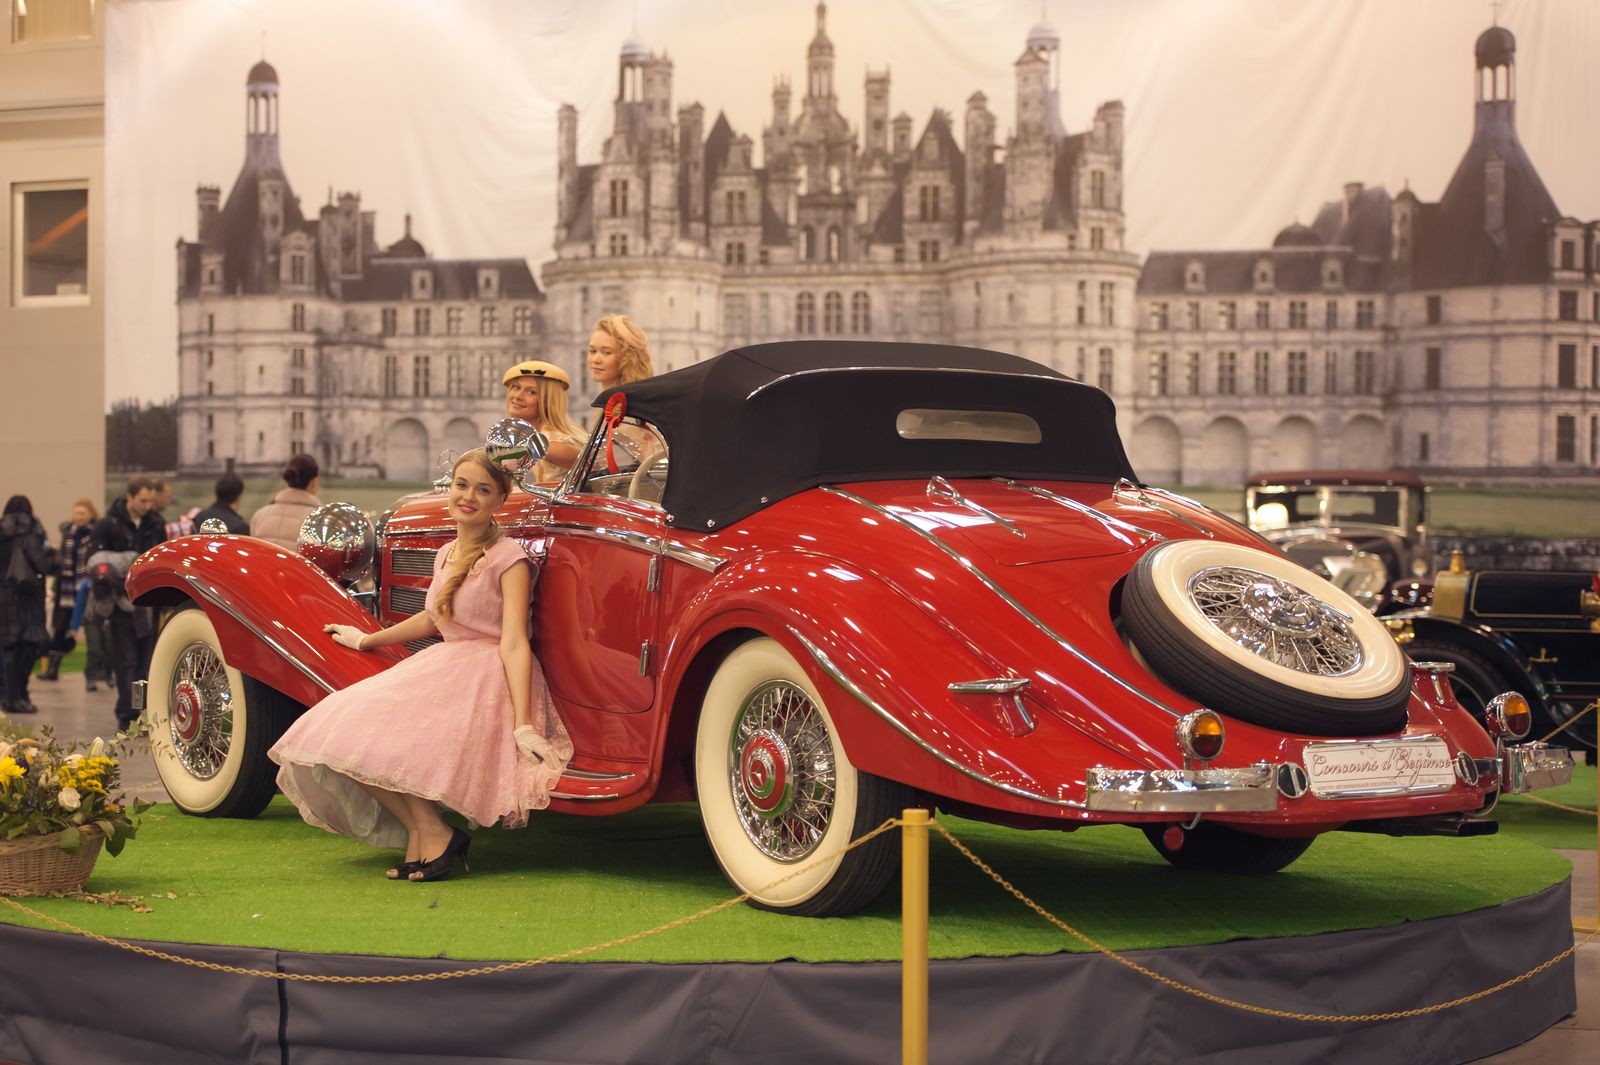 В Москве пройдет крупнейшая в России выставка старинных авто